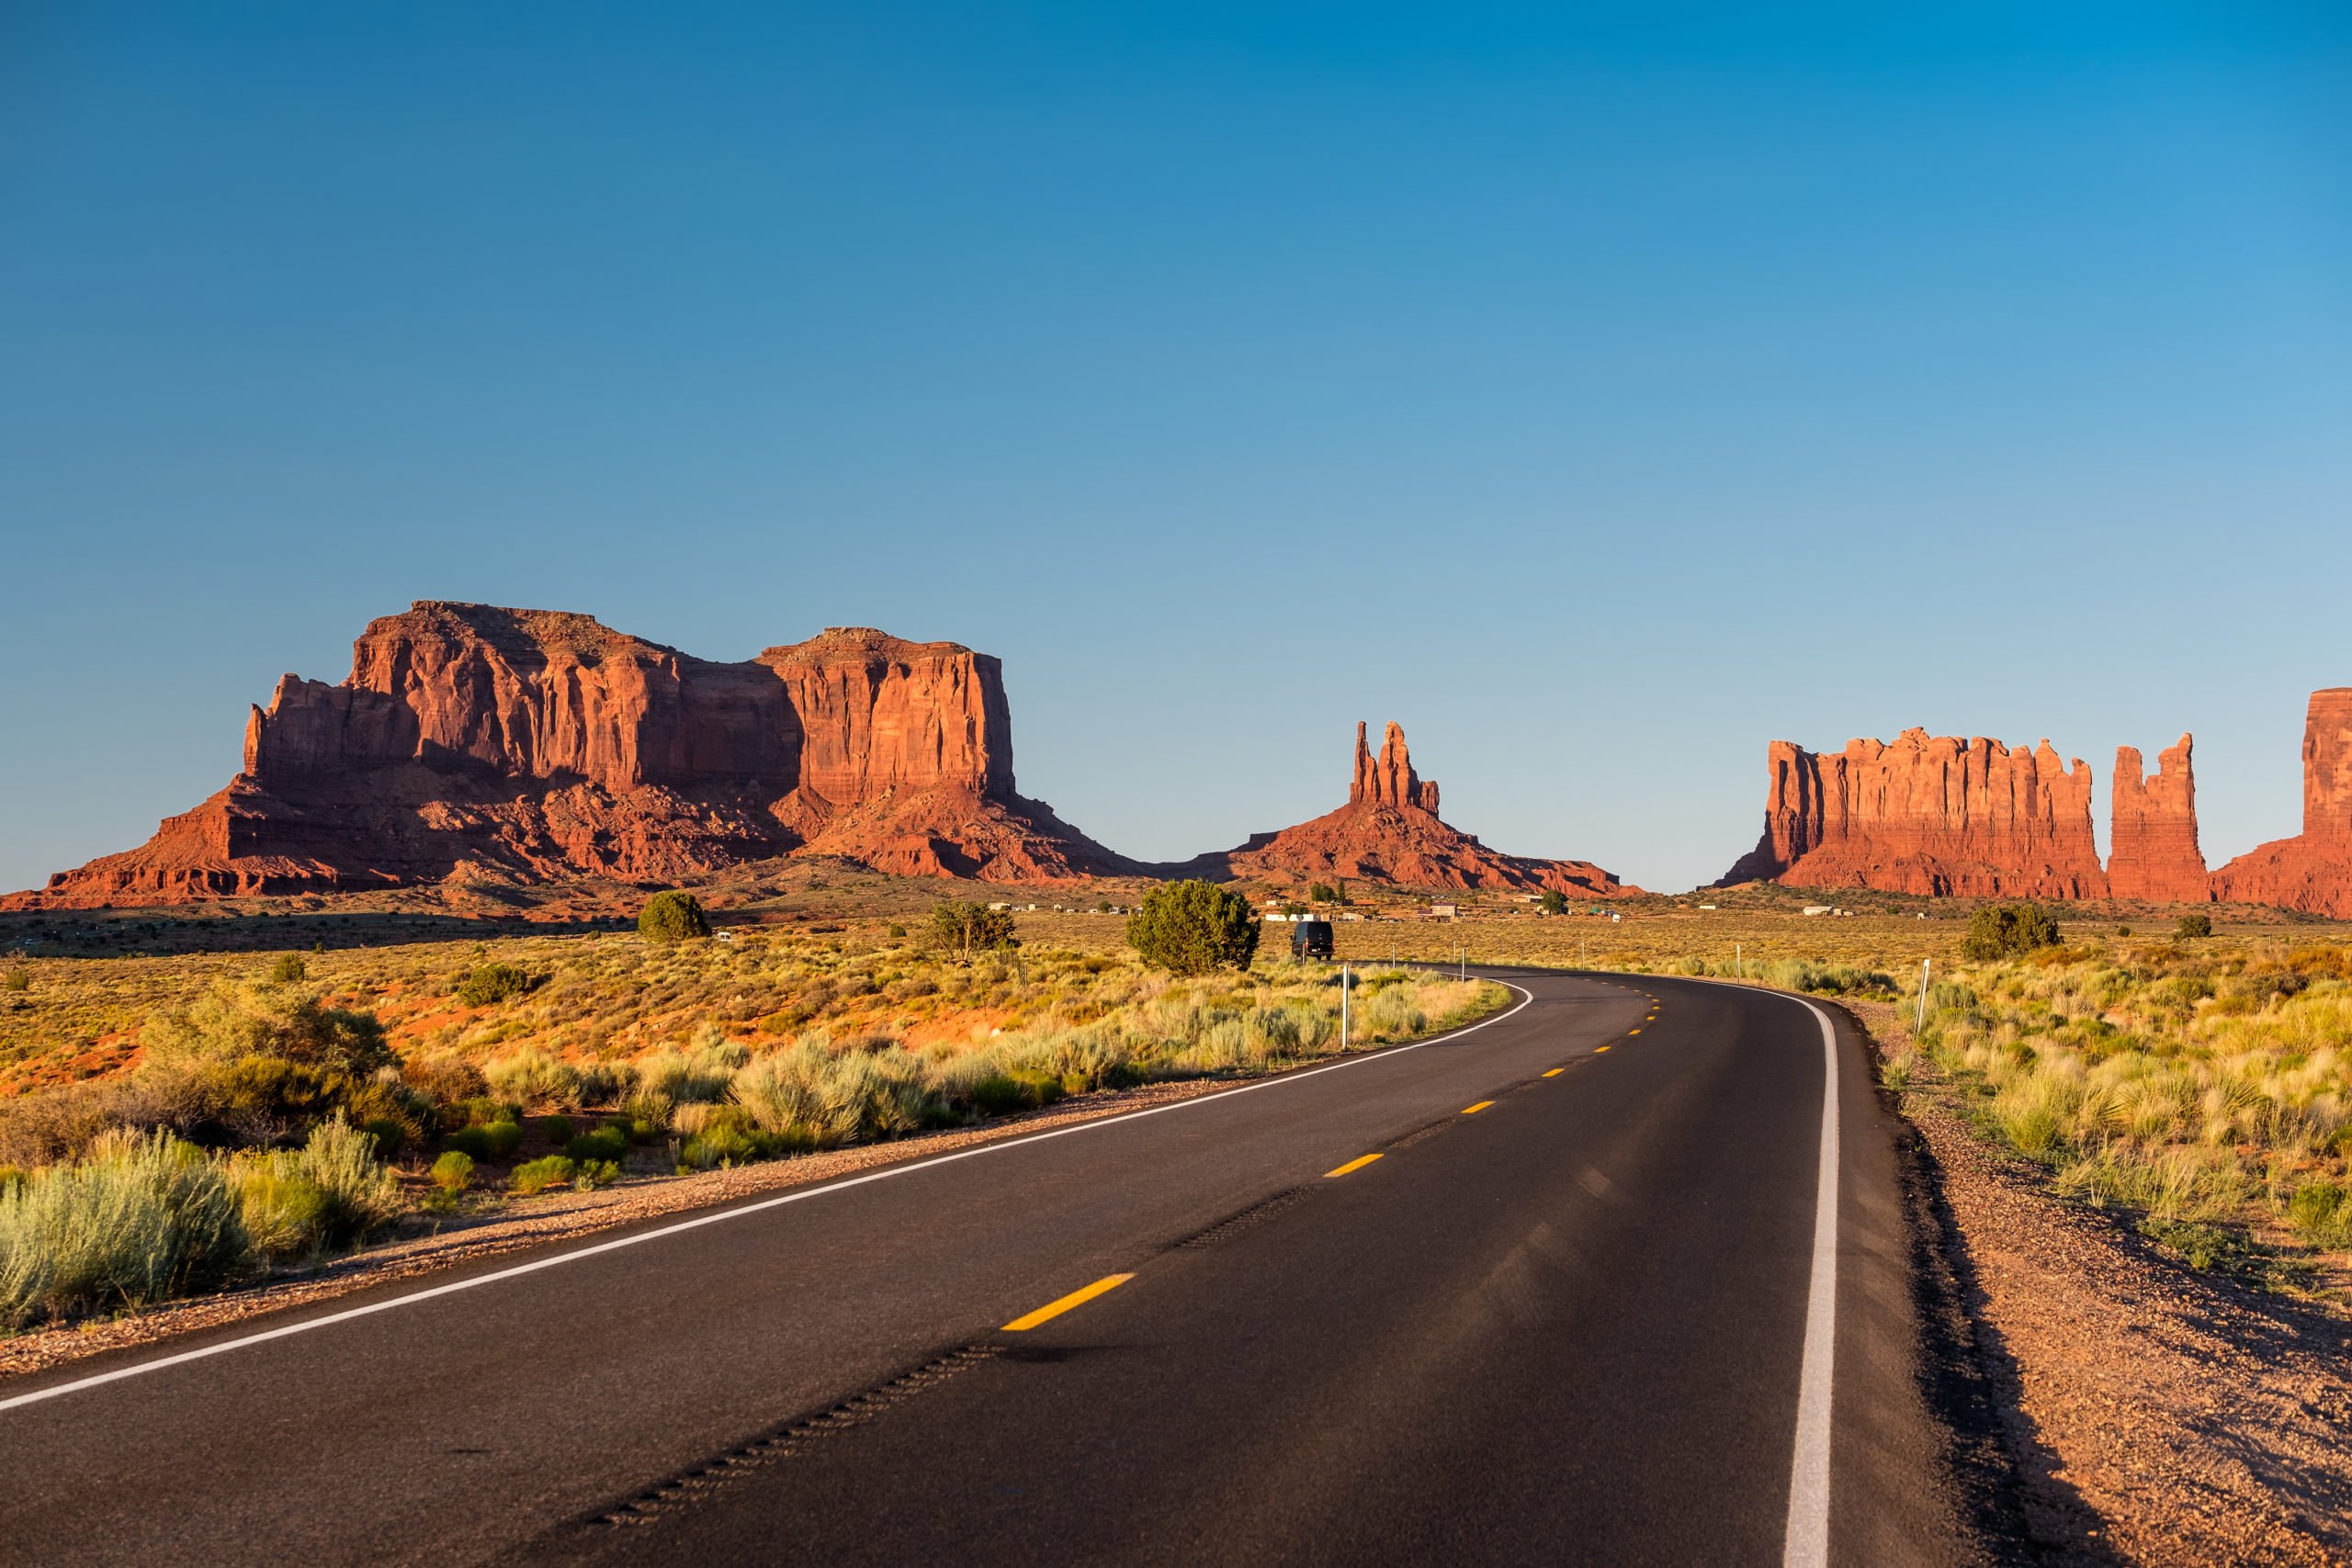  dangerous roads in Arizona